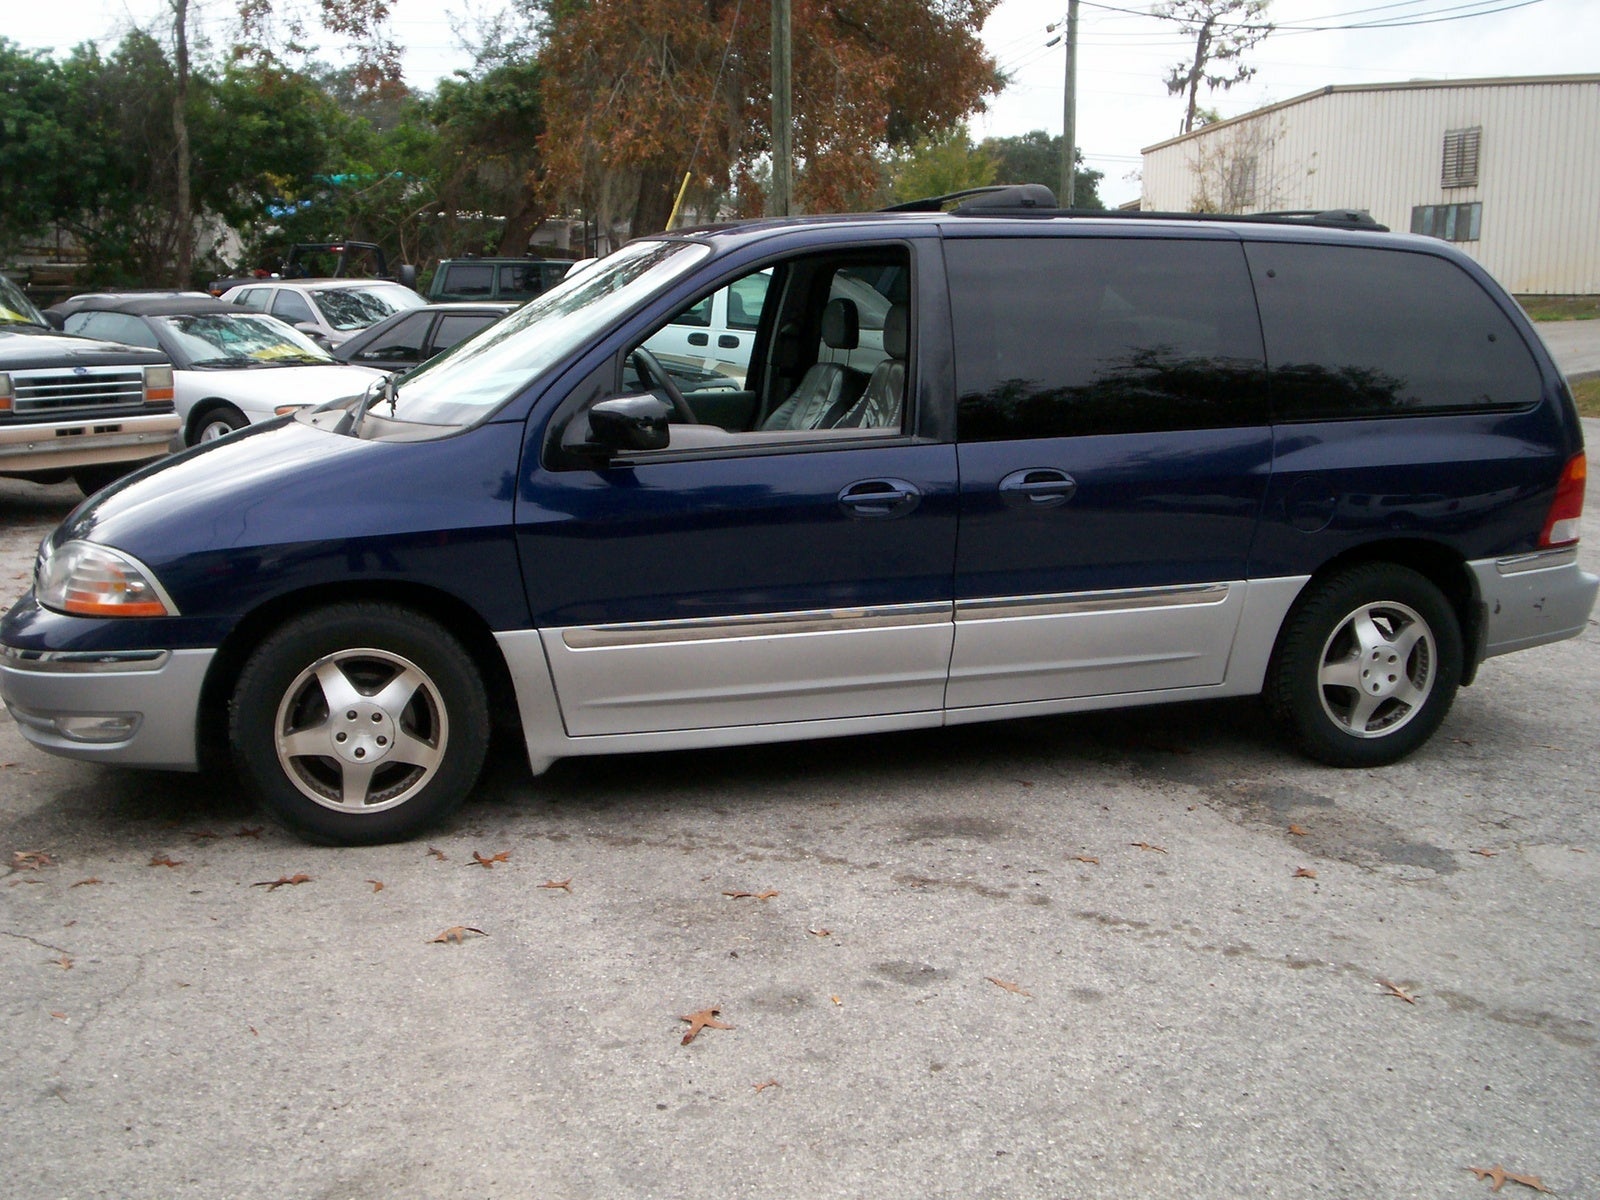 1999 Ford windstar minivan review #4